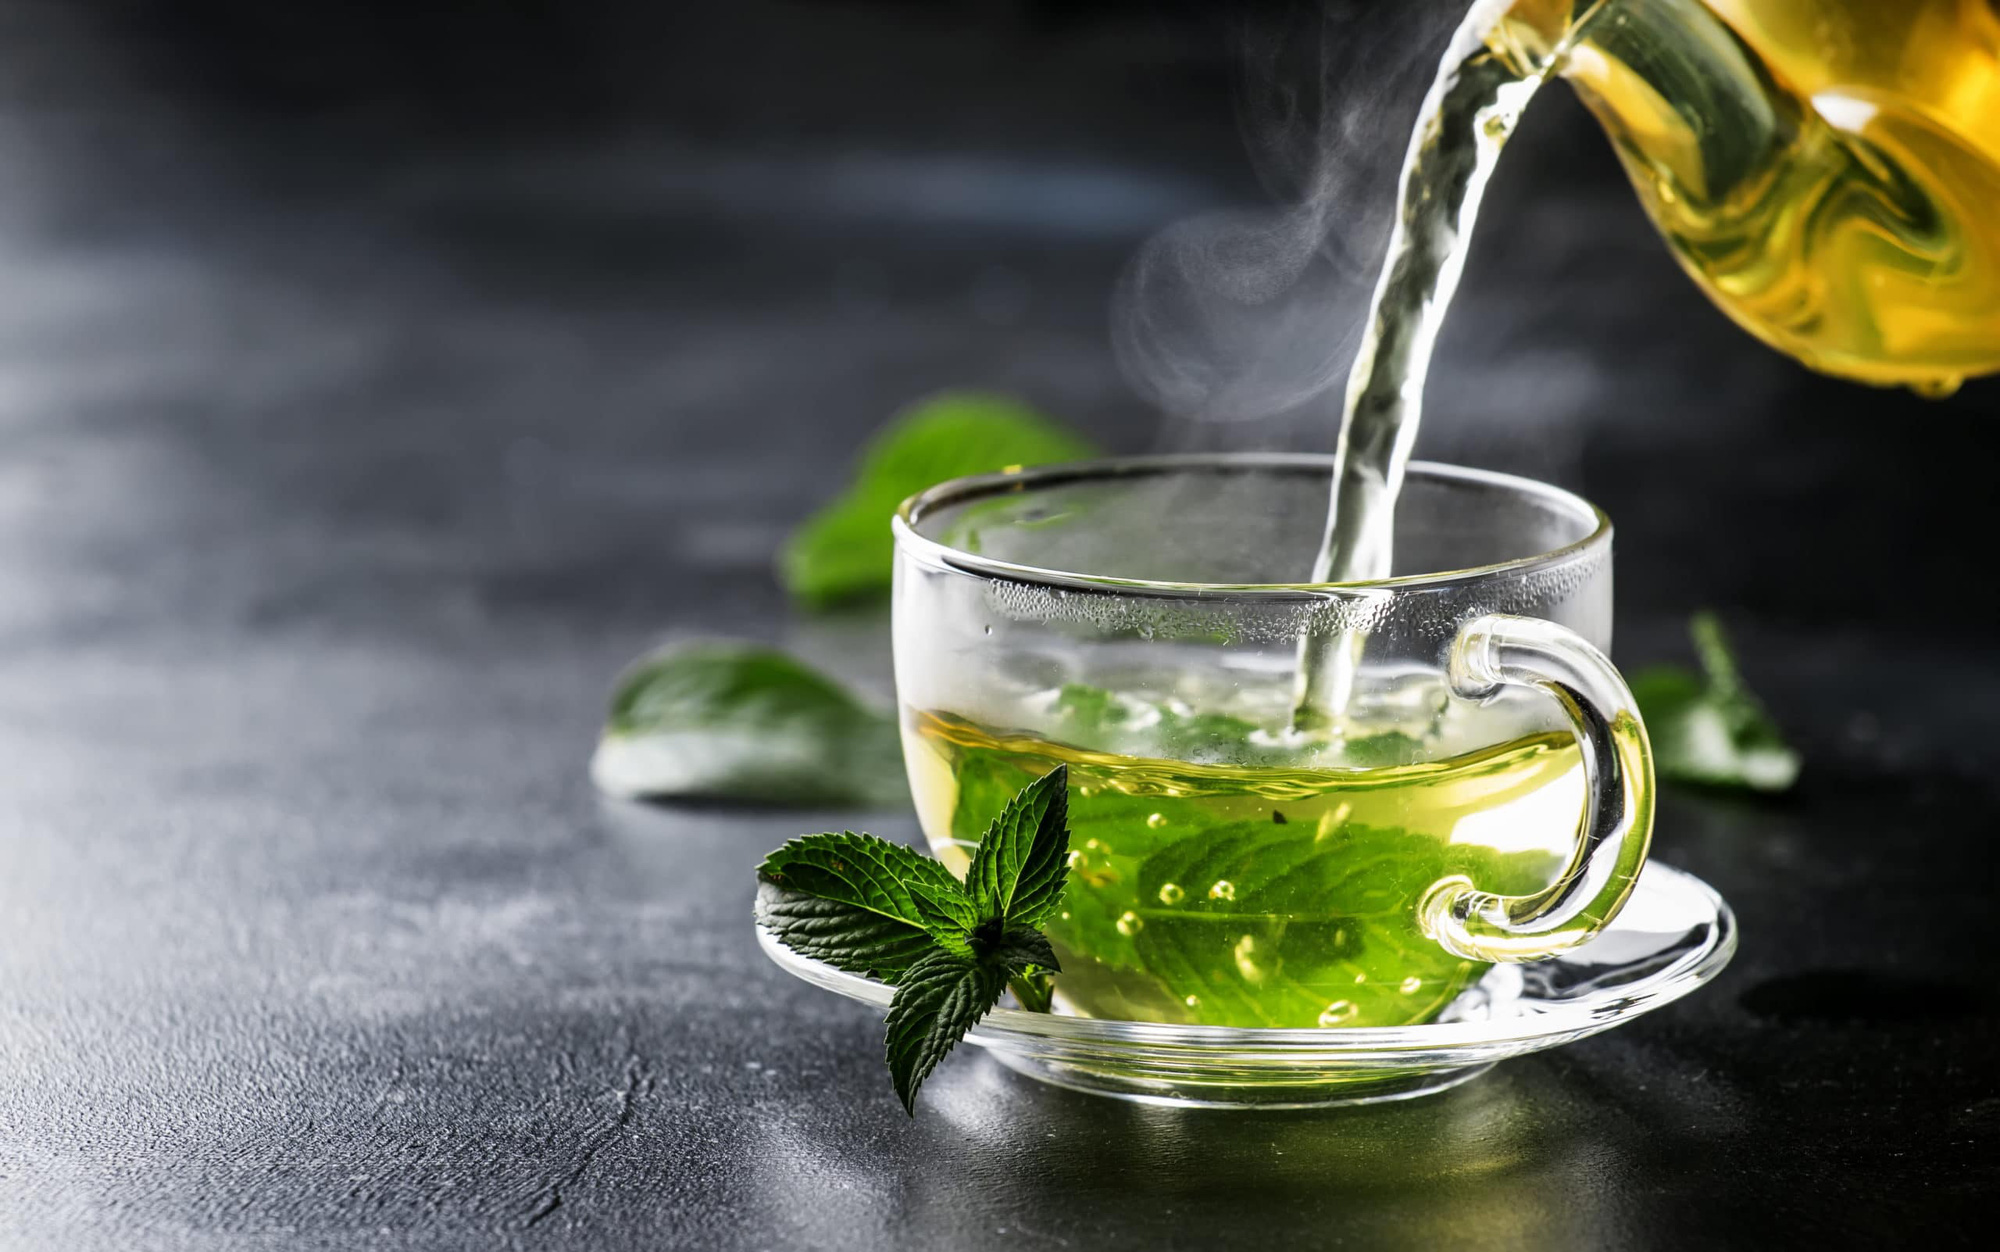 Các thành phần chứa trong lá trà mang lại nhiều lợi ích cho sức khỏe người dùng